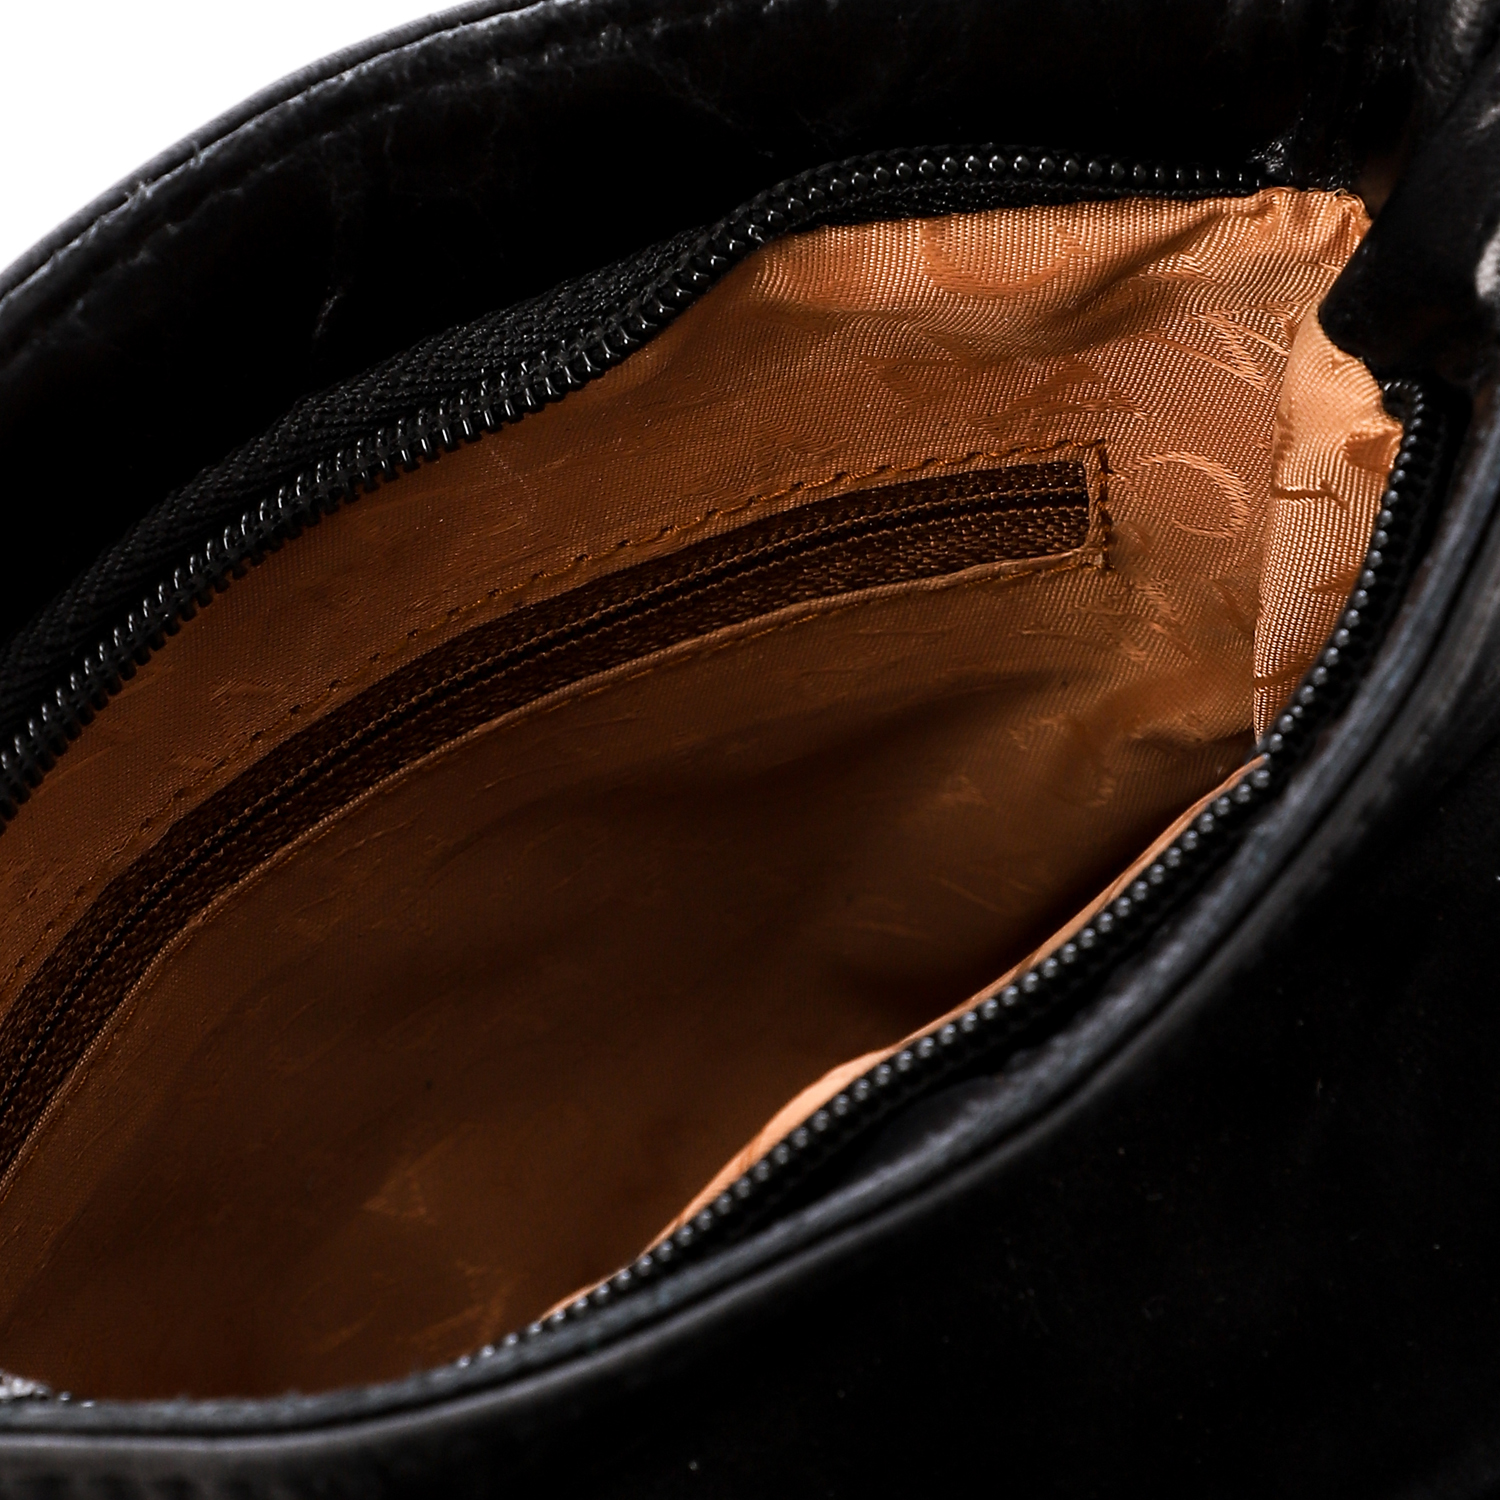  حقيبة كروس من أم أند أو جلد طبيعى صغيرة للرجال  -أسود